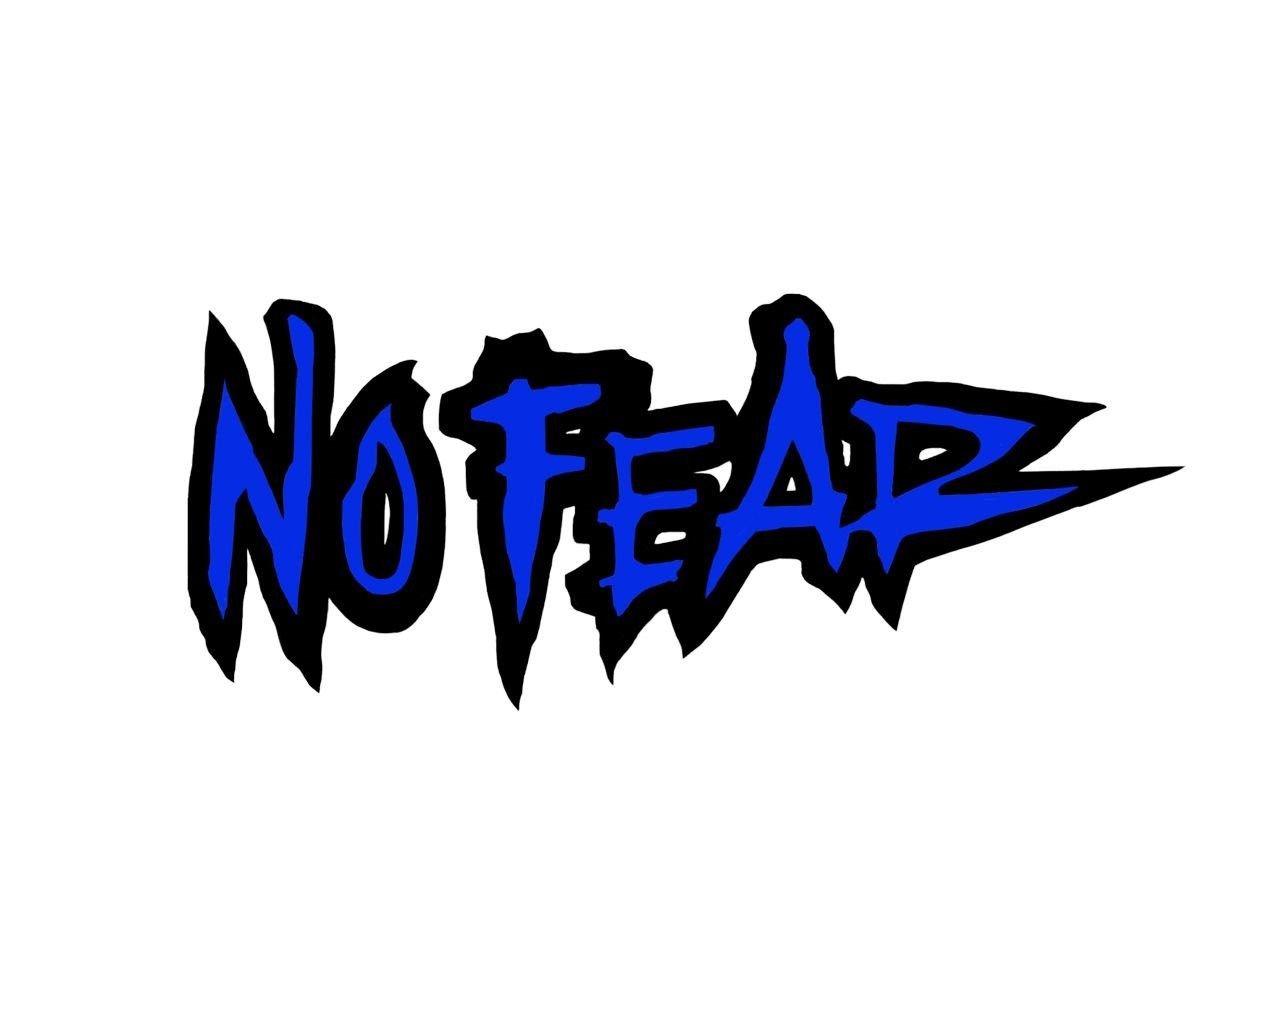 Wallpapers No Fear Logo - Wallpaper Cave